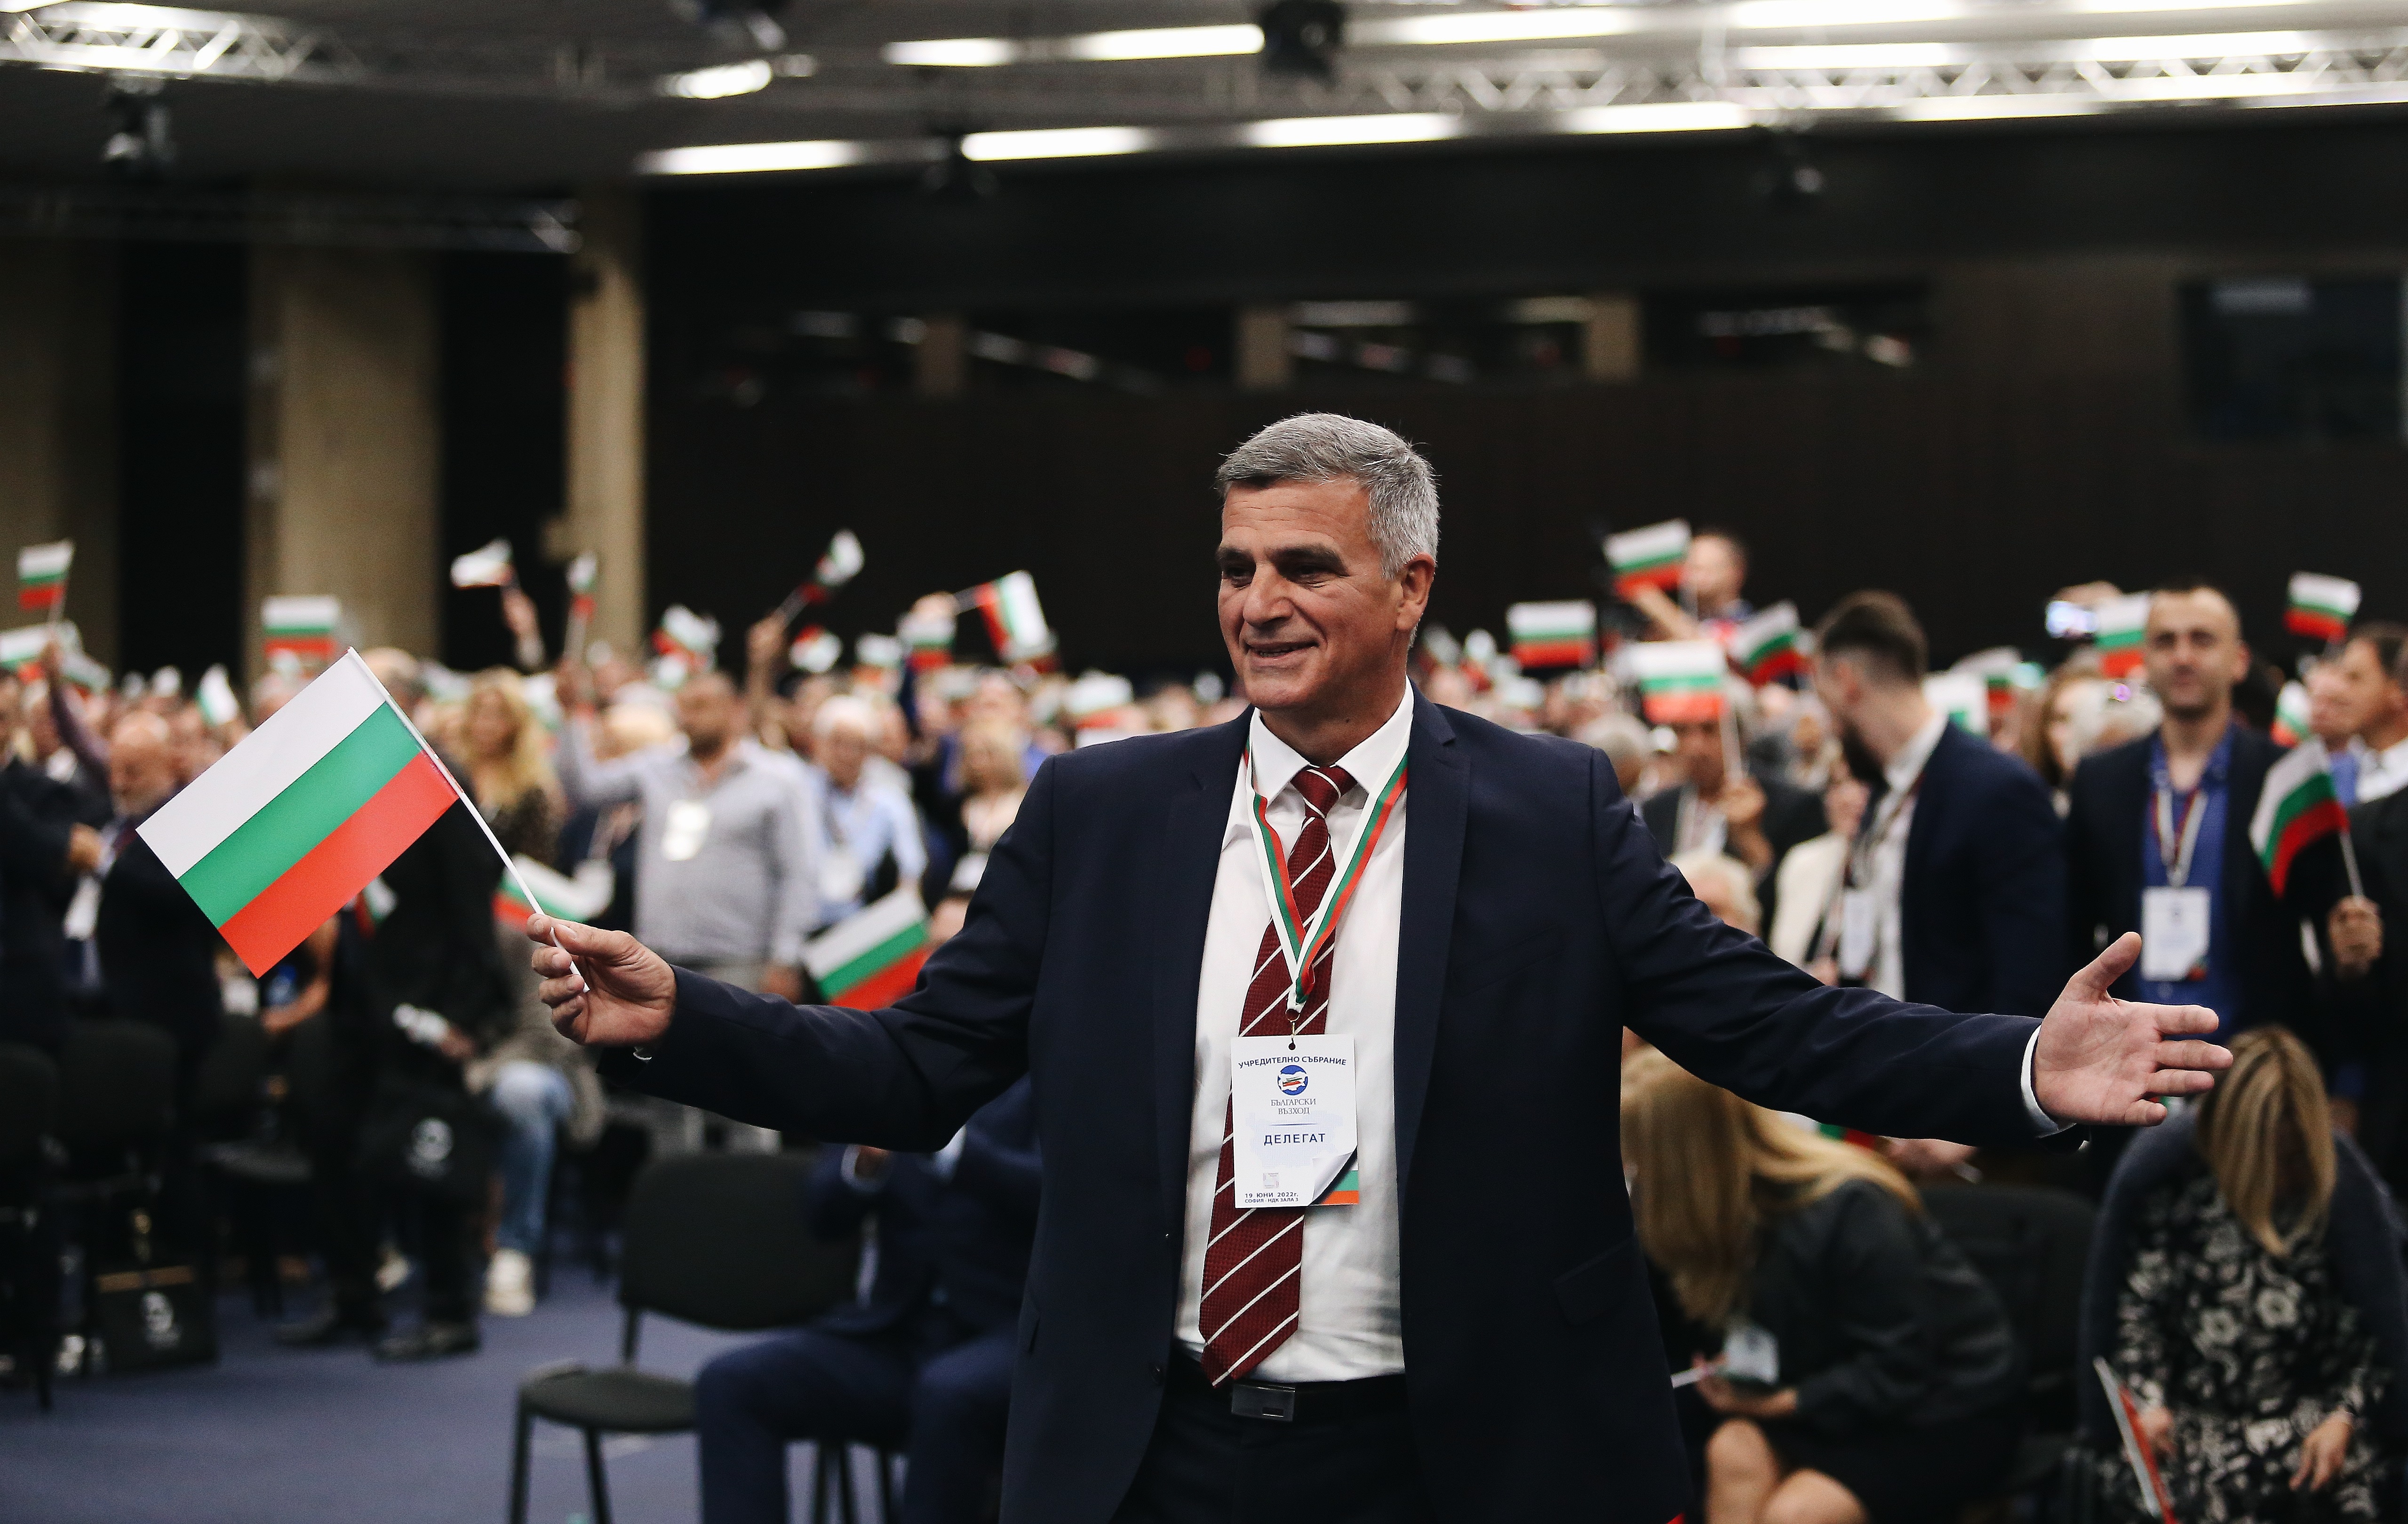 КП Български възход откри предизборната си кампания в зала Съединение